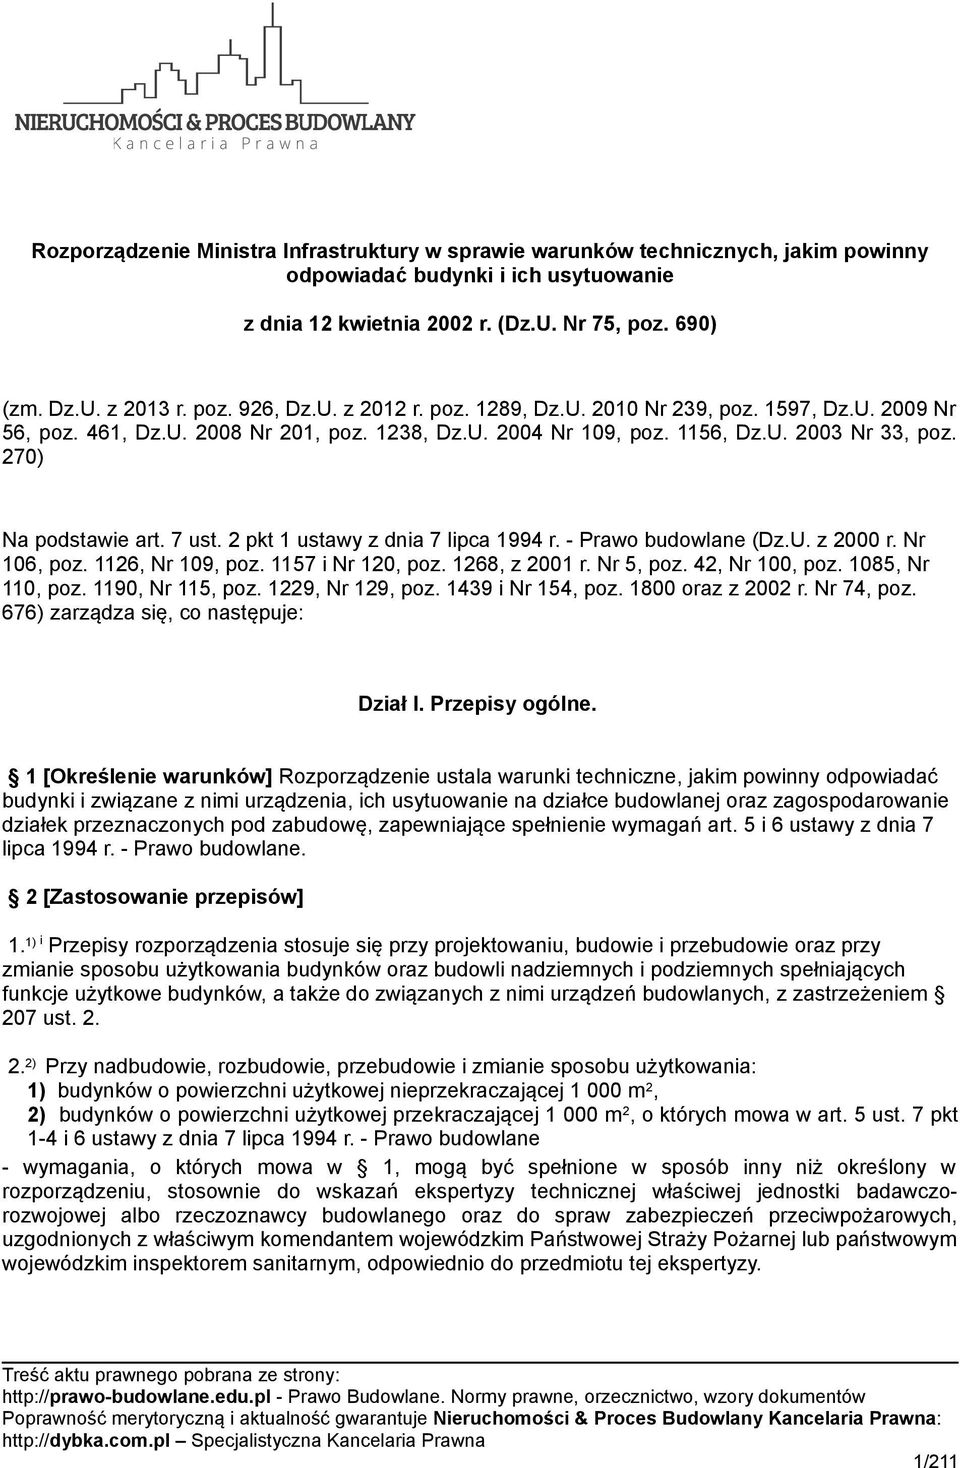 Warunki techniczne dla budynków i ich usytuowania Dz.U.2002.75.690. Część 07 z 14. Dział VII Bezpieczeństwo użytkowania